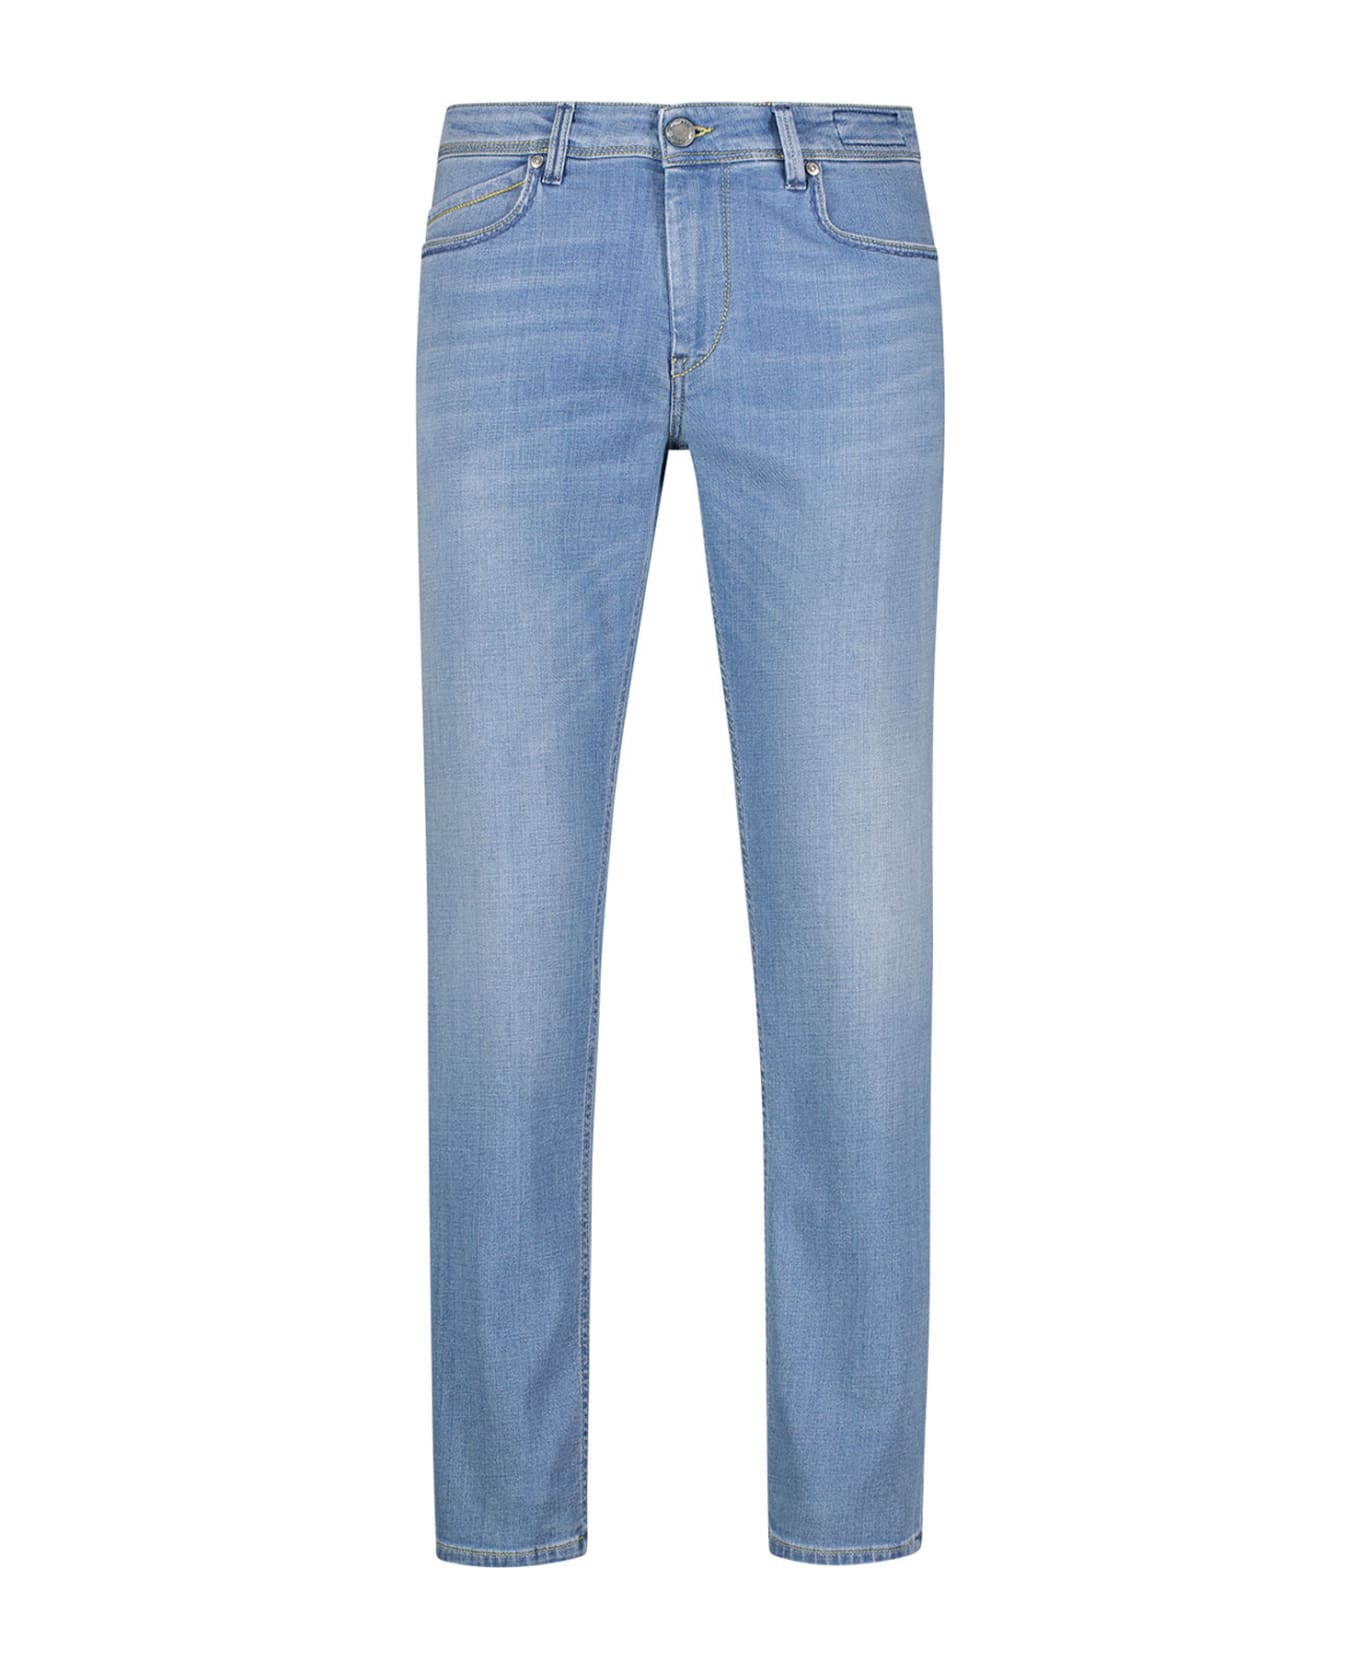 Re-HasH Slim Fit Jeans In Light Denim - DENIM CHIARO